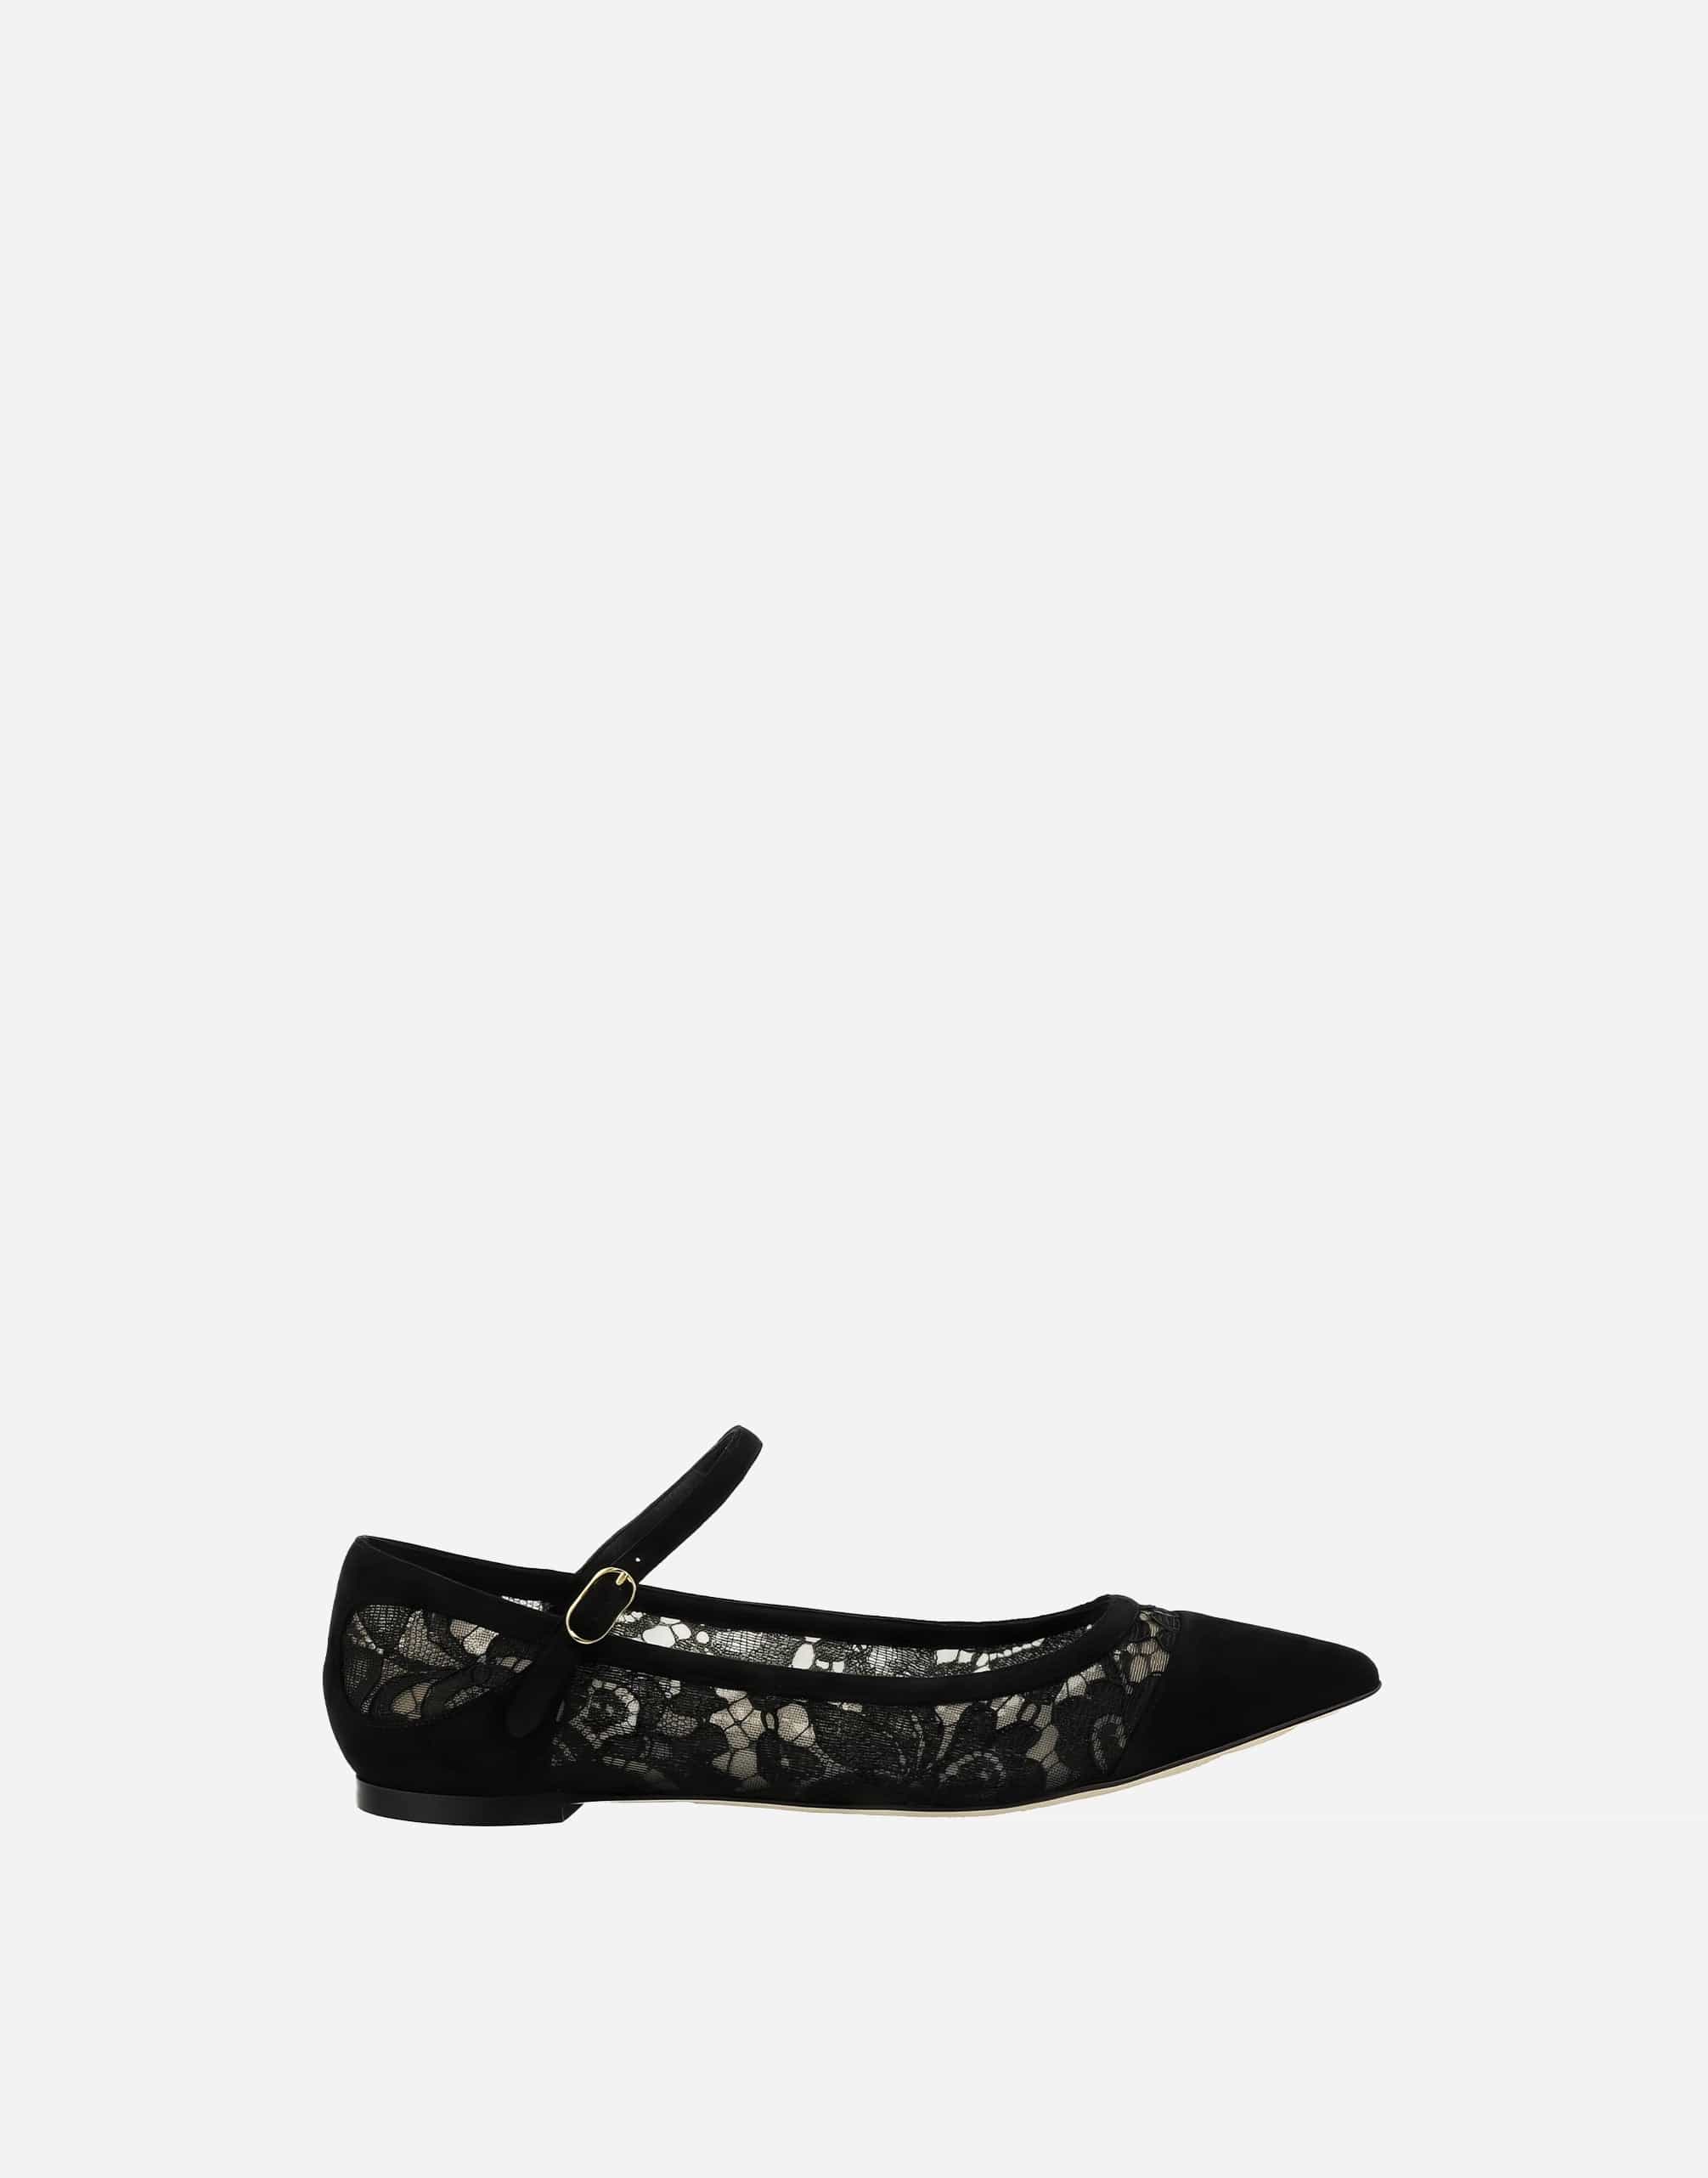 Dolce & Gabbana Bellucci Flat Shoes